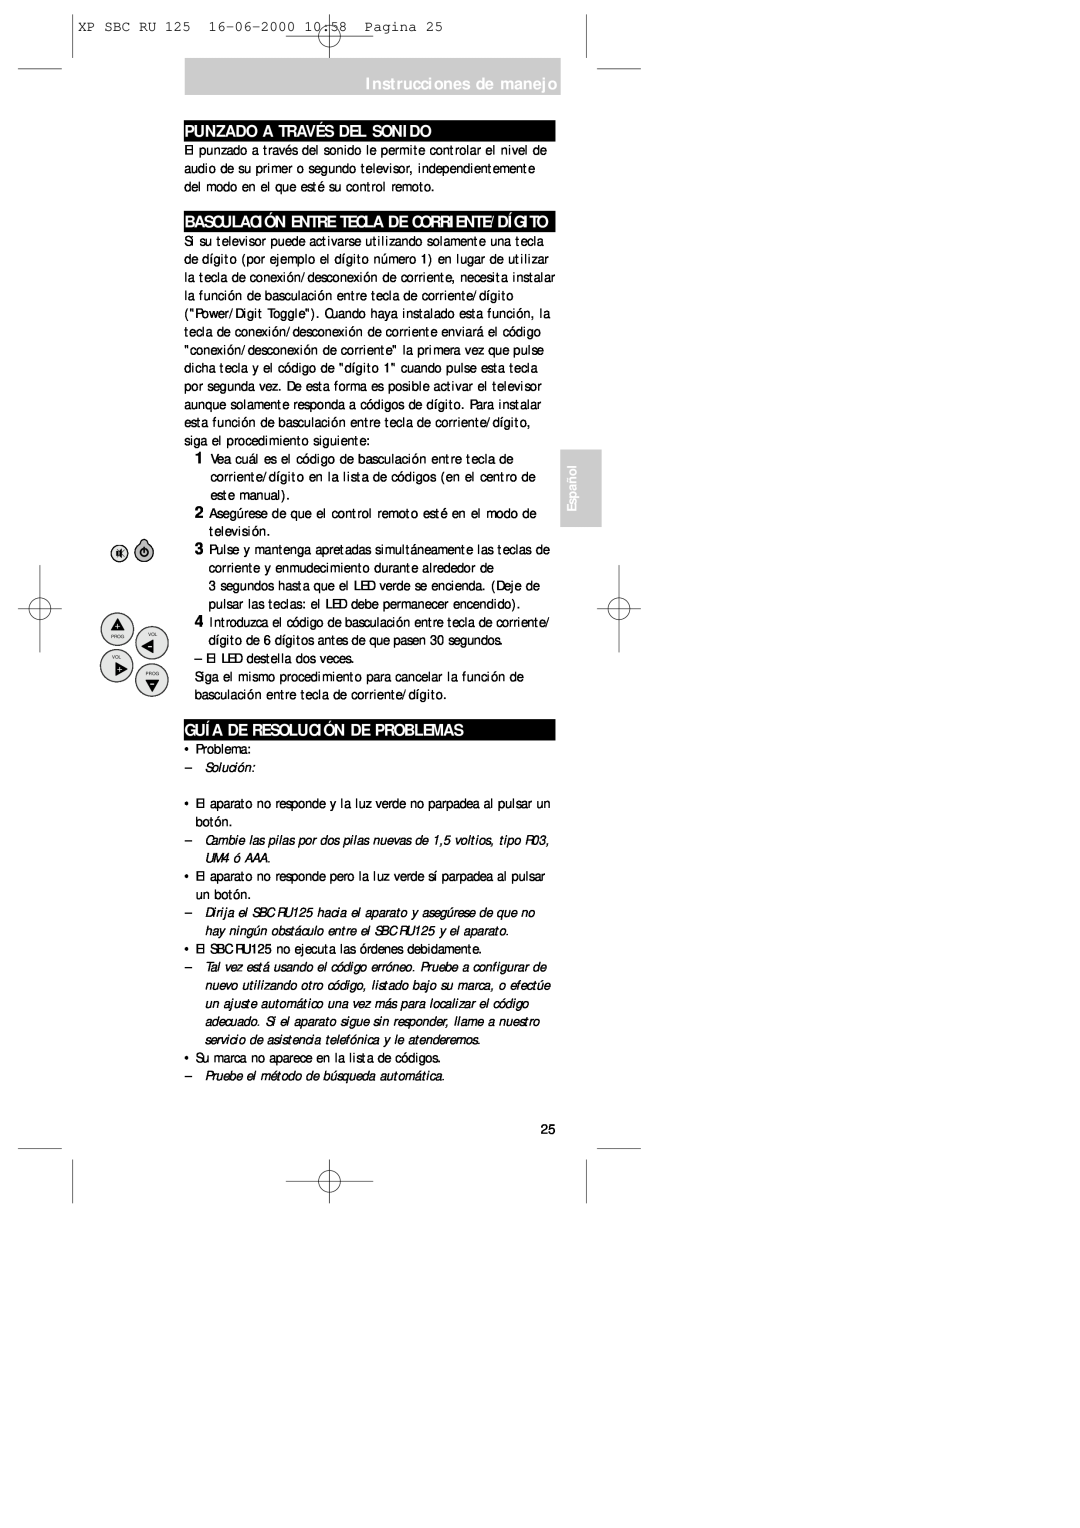 Philips RU125 Punzado A Través Del Sonido, Guía De Resolución De Problemas, Basculación Entre Tecla De Corriente/Dígito 